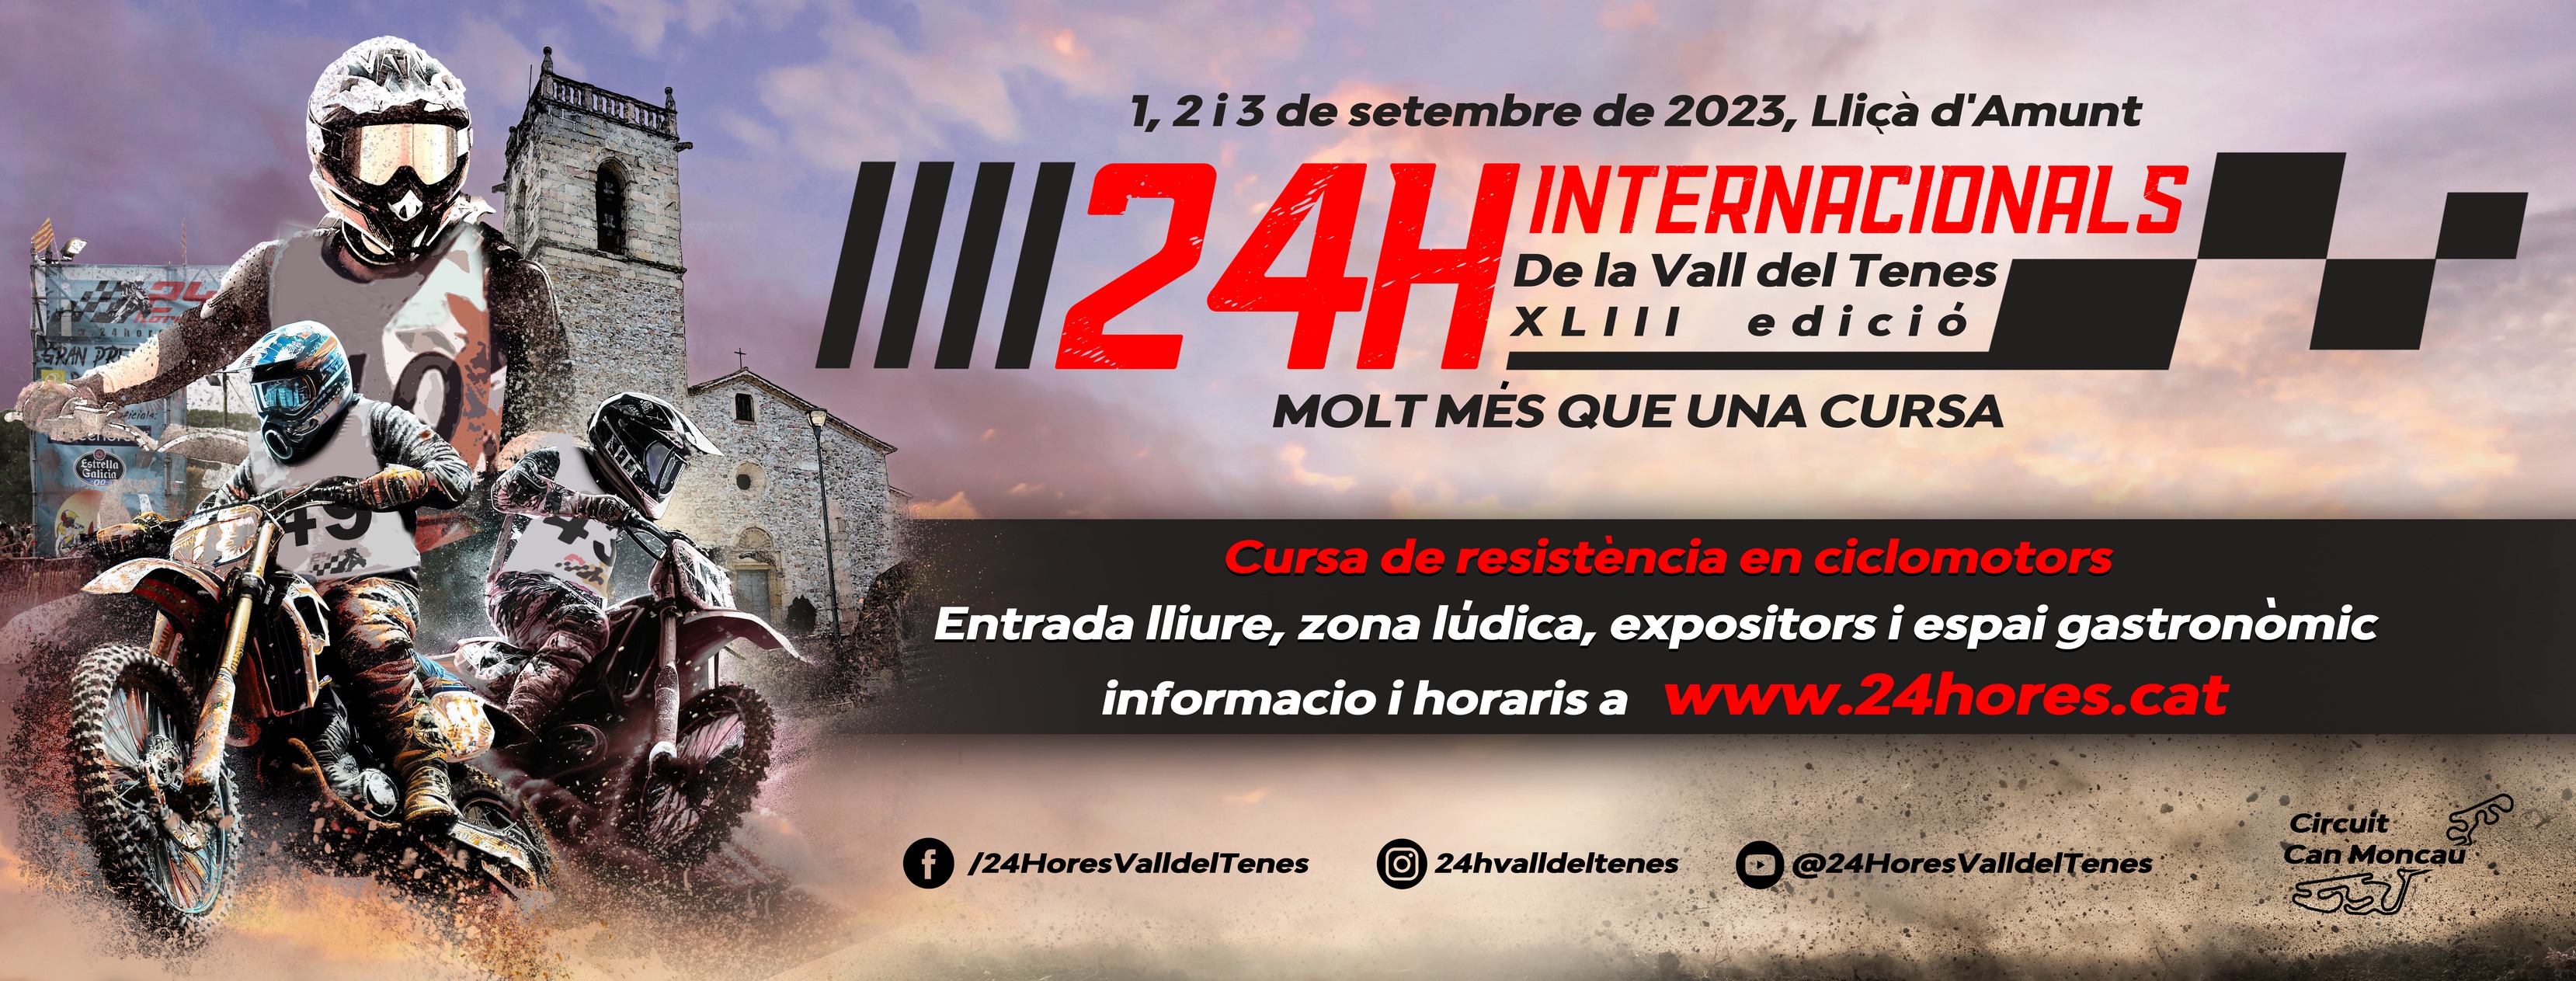 XLIII edició de les 24 Hores Internacionals de Resistència en Ciclomotors de la Vall del Tenes